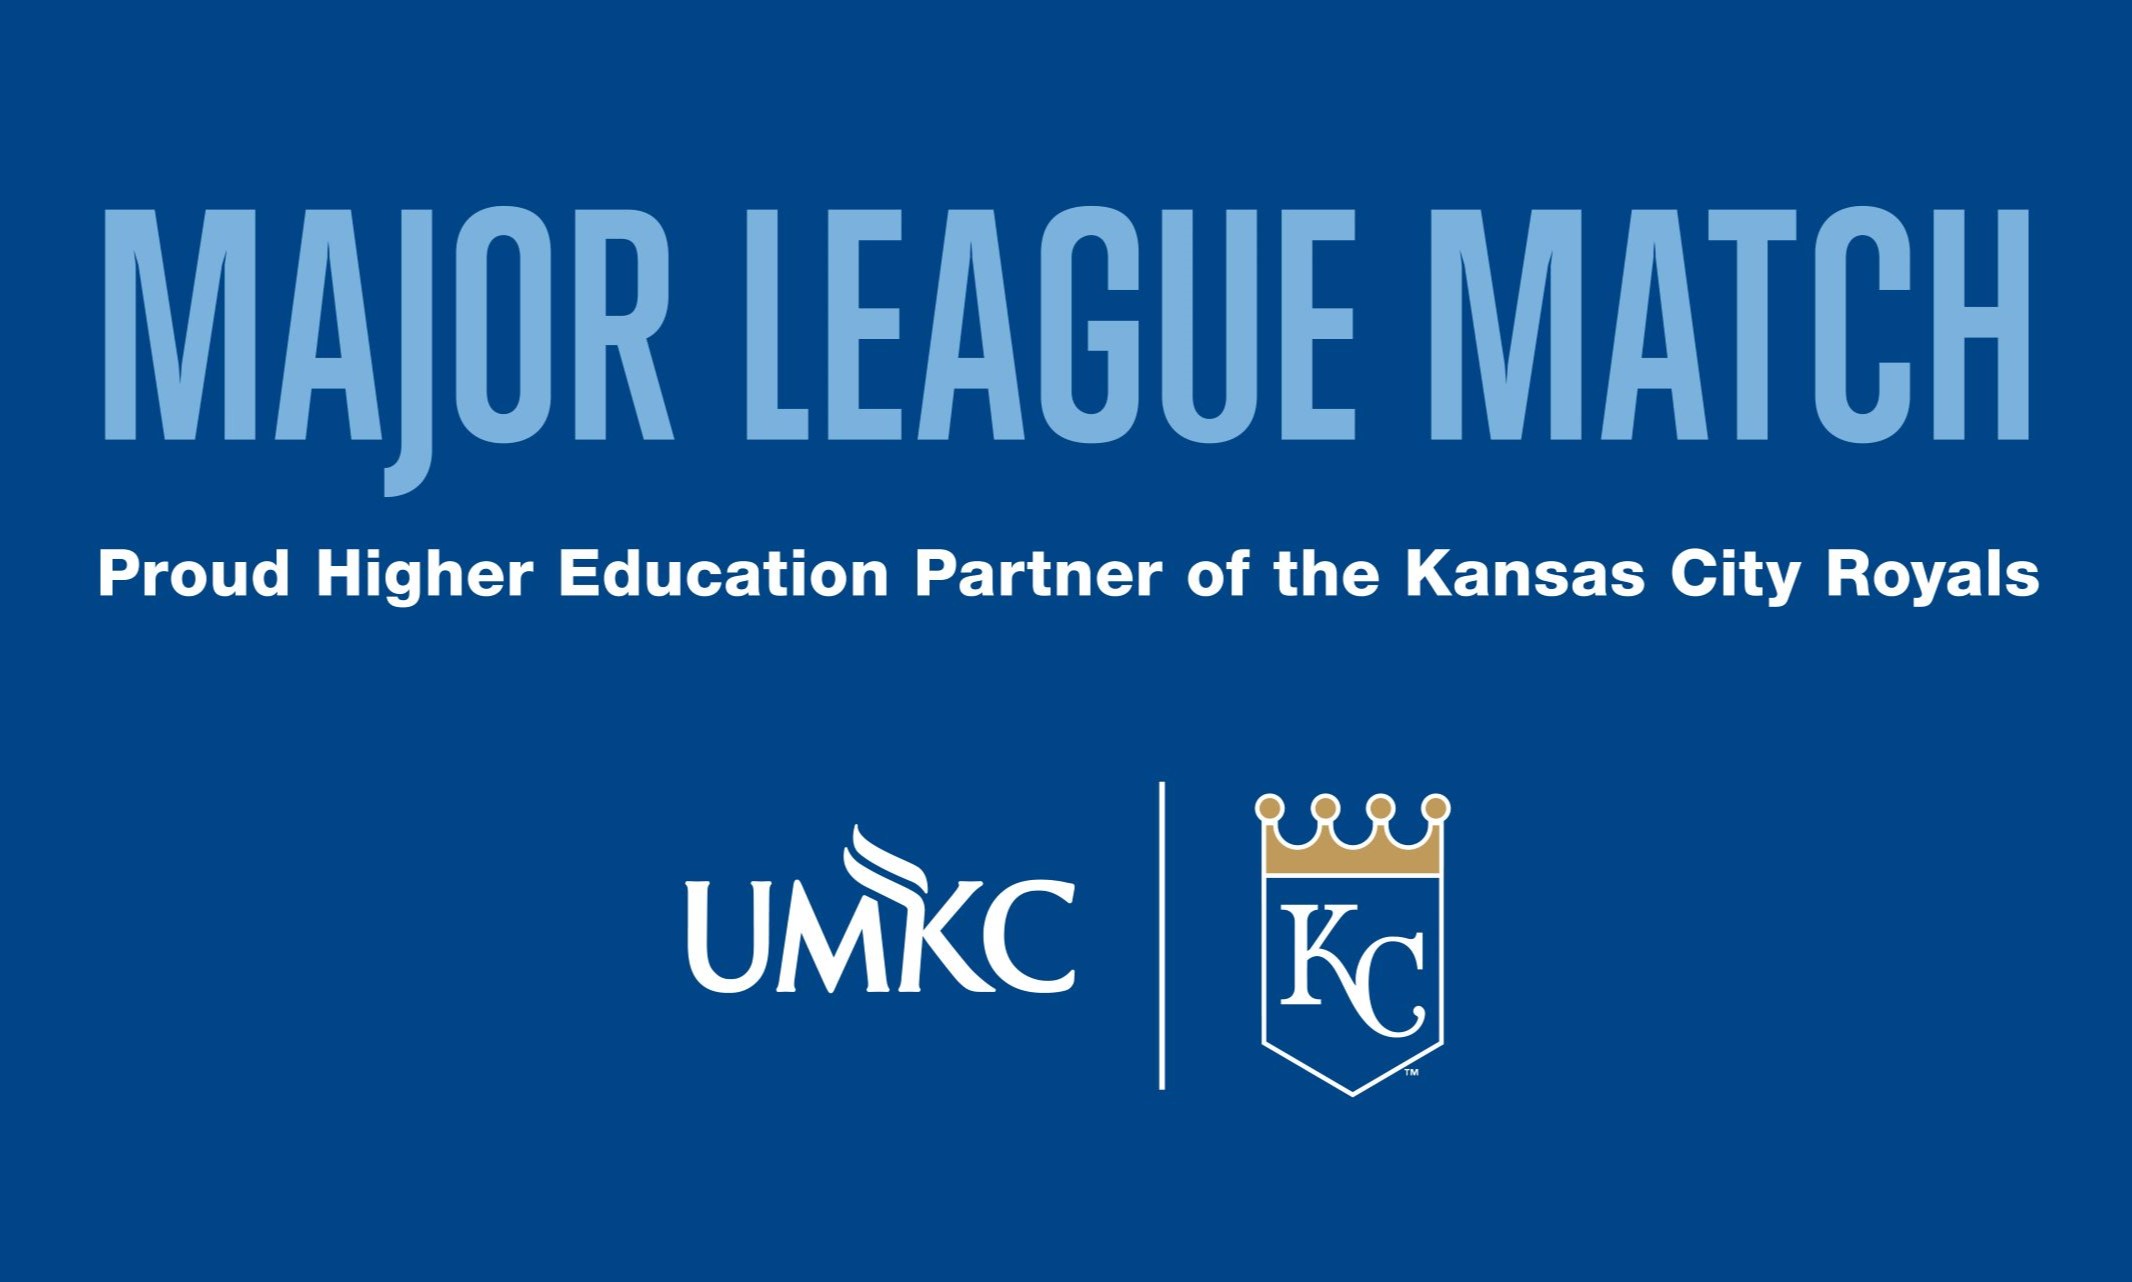 KC Royals and UMKC logos